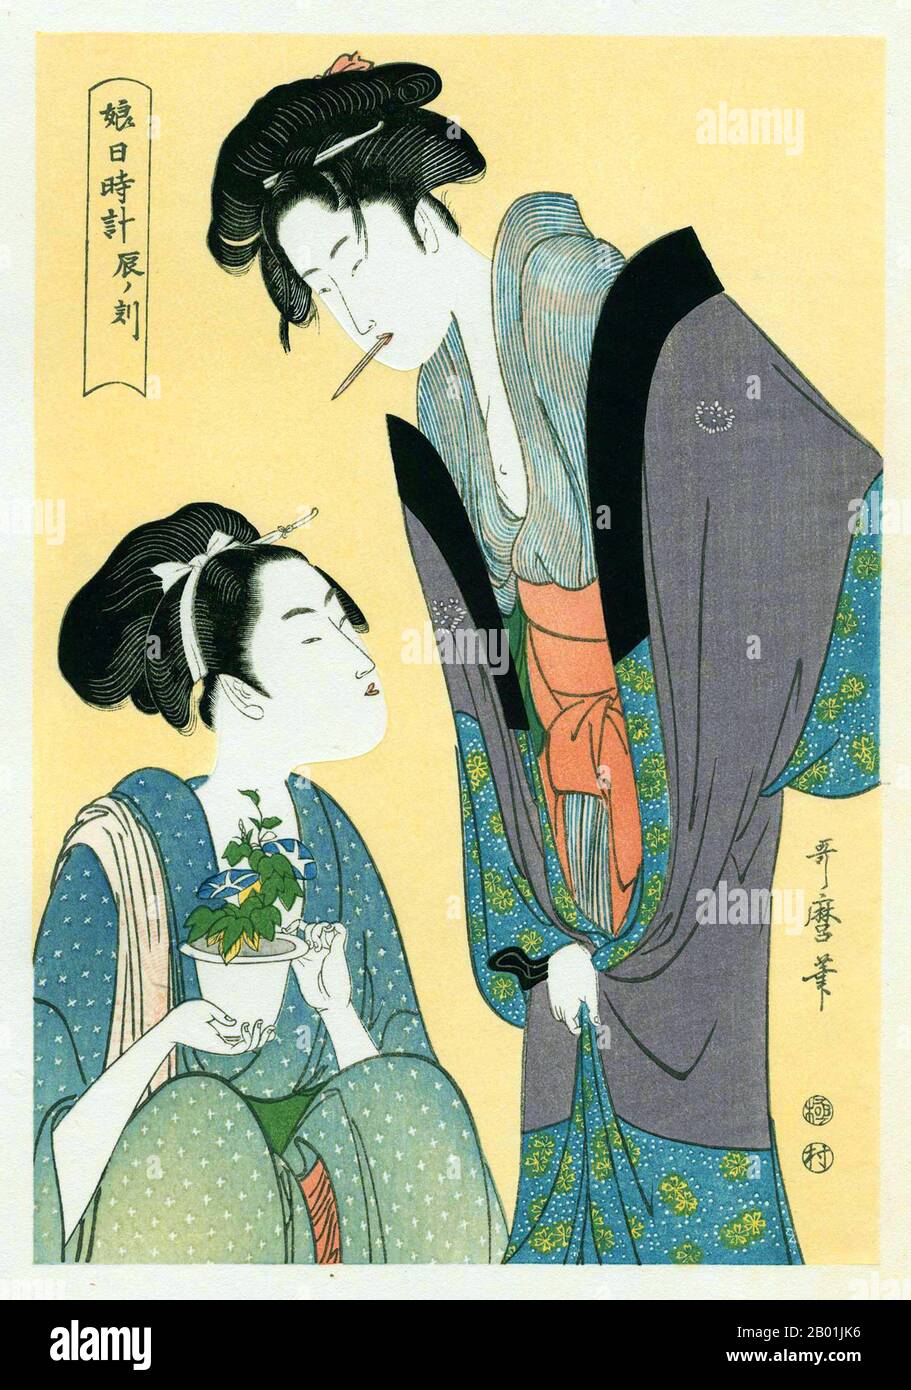 Japan: "Stunde des Hasen". Ukiyo-e-Holzblockdruck aus der Serie „Twelve Houses of the Green Houses“ von Kitagawa Utamaro, (ca. 1753. Bis 31. Oktober 1806), 1794. Kitagawa Utamaro war ein japanischer Druckmacher und Maler, der als einer der größten Künstler von Holzblockdrucken gilt (Ukiyo-e). Er ist vor allem bekannt für seine meisterhaft zusammengestellten Studien über Frauen, bekannt als Bijinga. Er produzierte auch Naturstudien, insbesondere illustrierte Bücher über Insekten. Stockfoto